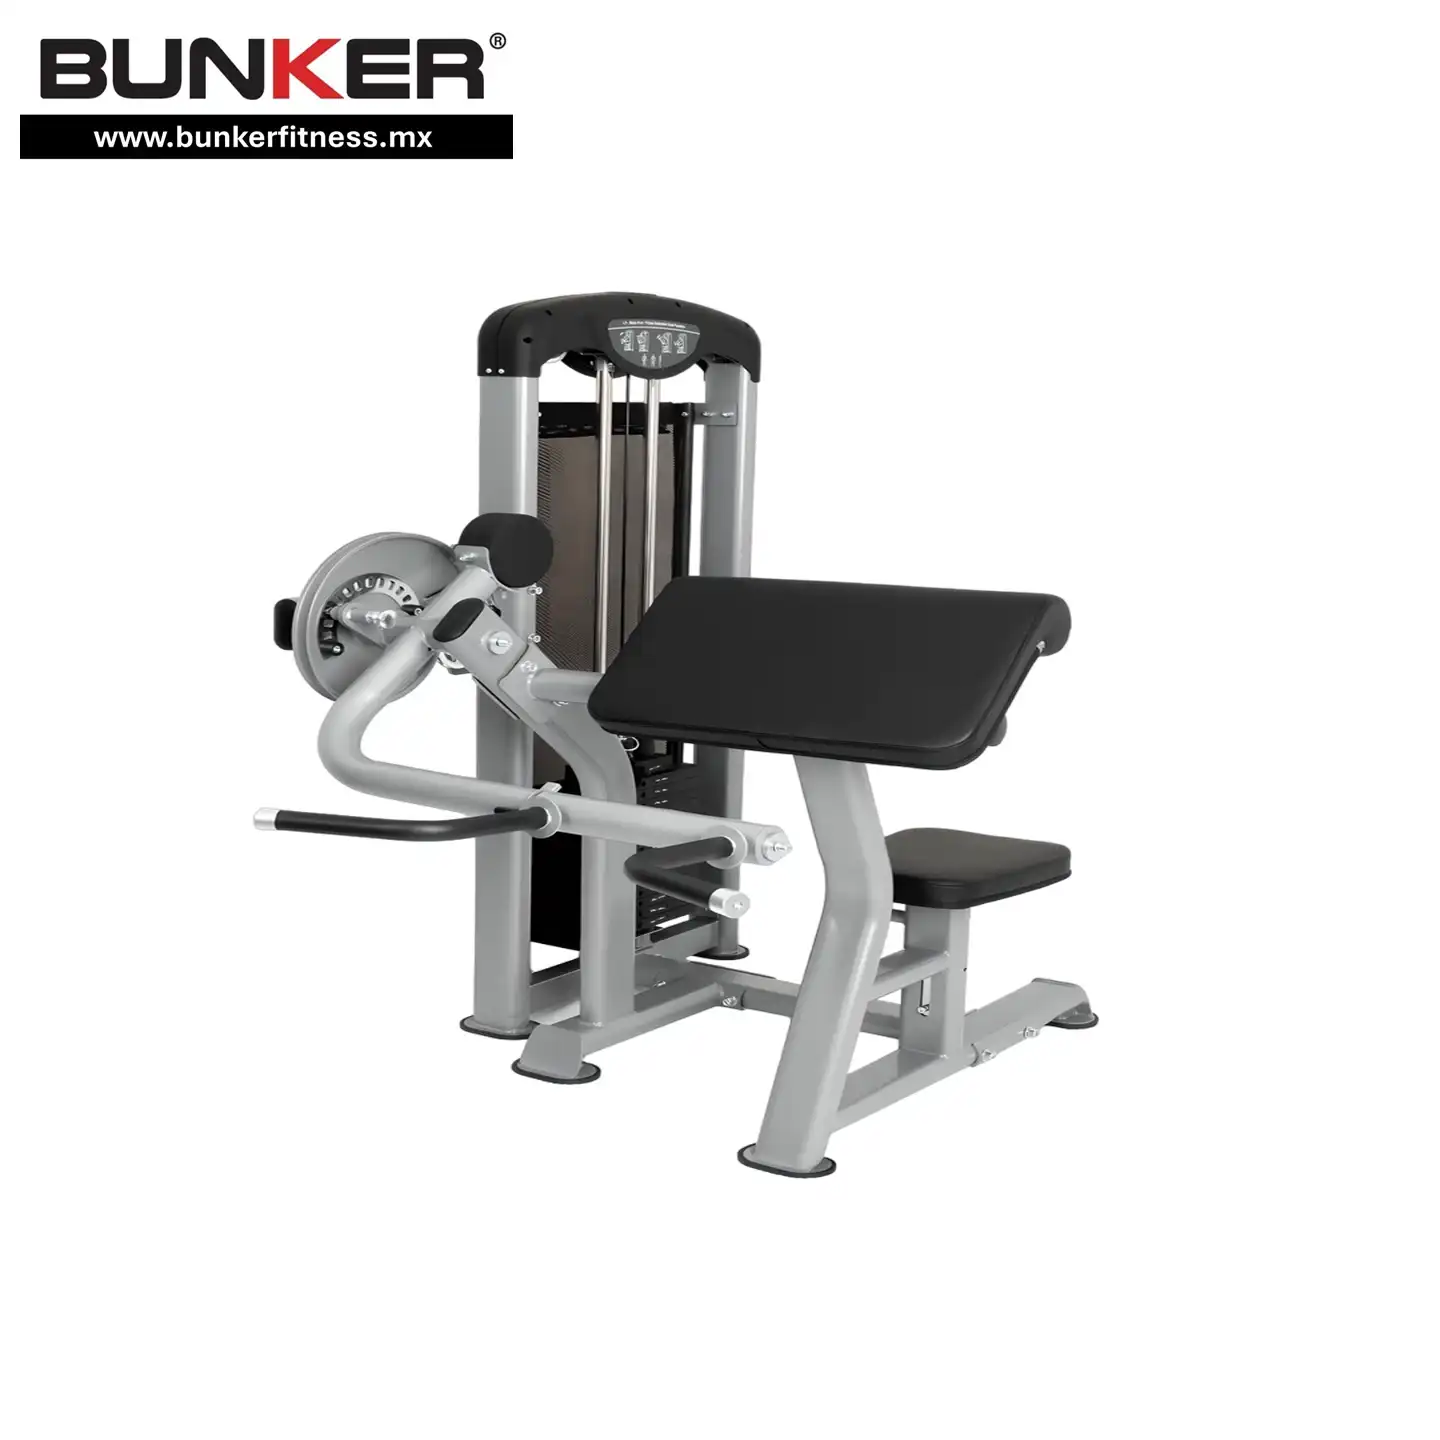 aparato de biceps y triceps dual para ejercicio y gimnasio en casa bunker gym bunker fitness